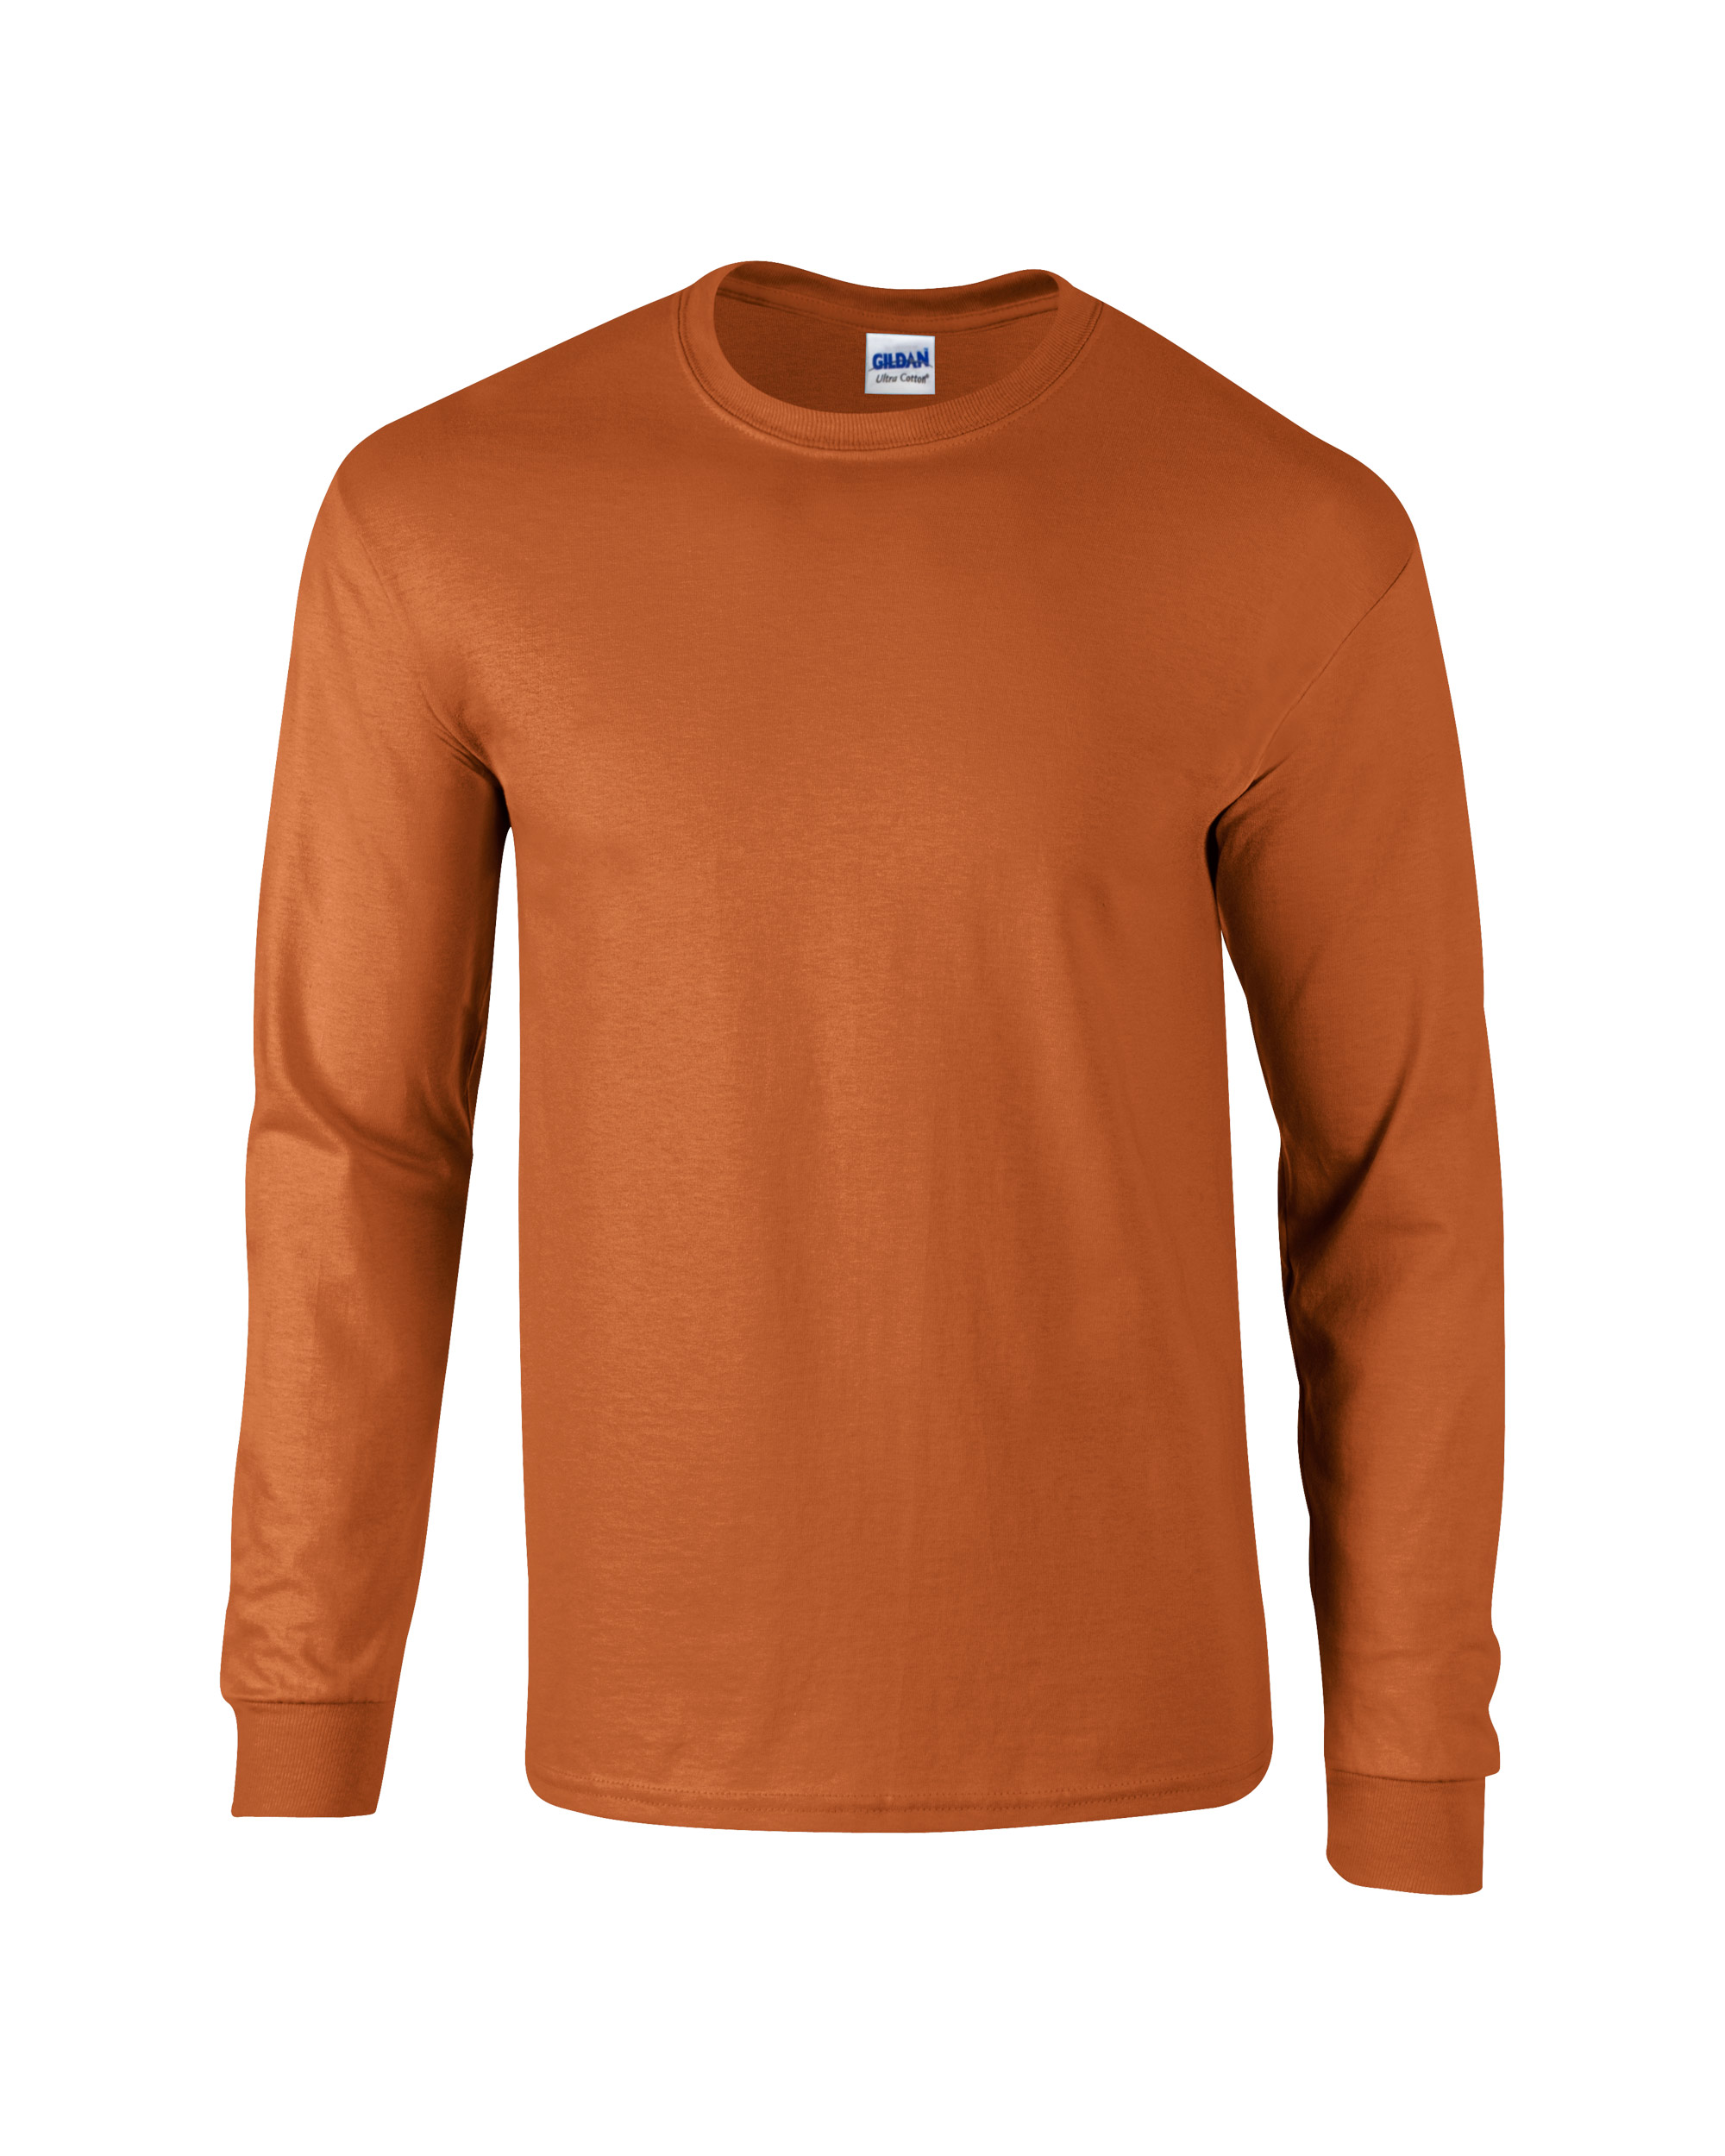 Gildan Adult Unisex Ultra Cotton Long Sleeve T-Shirt - Team Shirt Pros